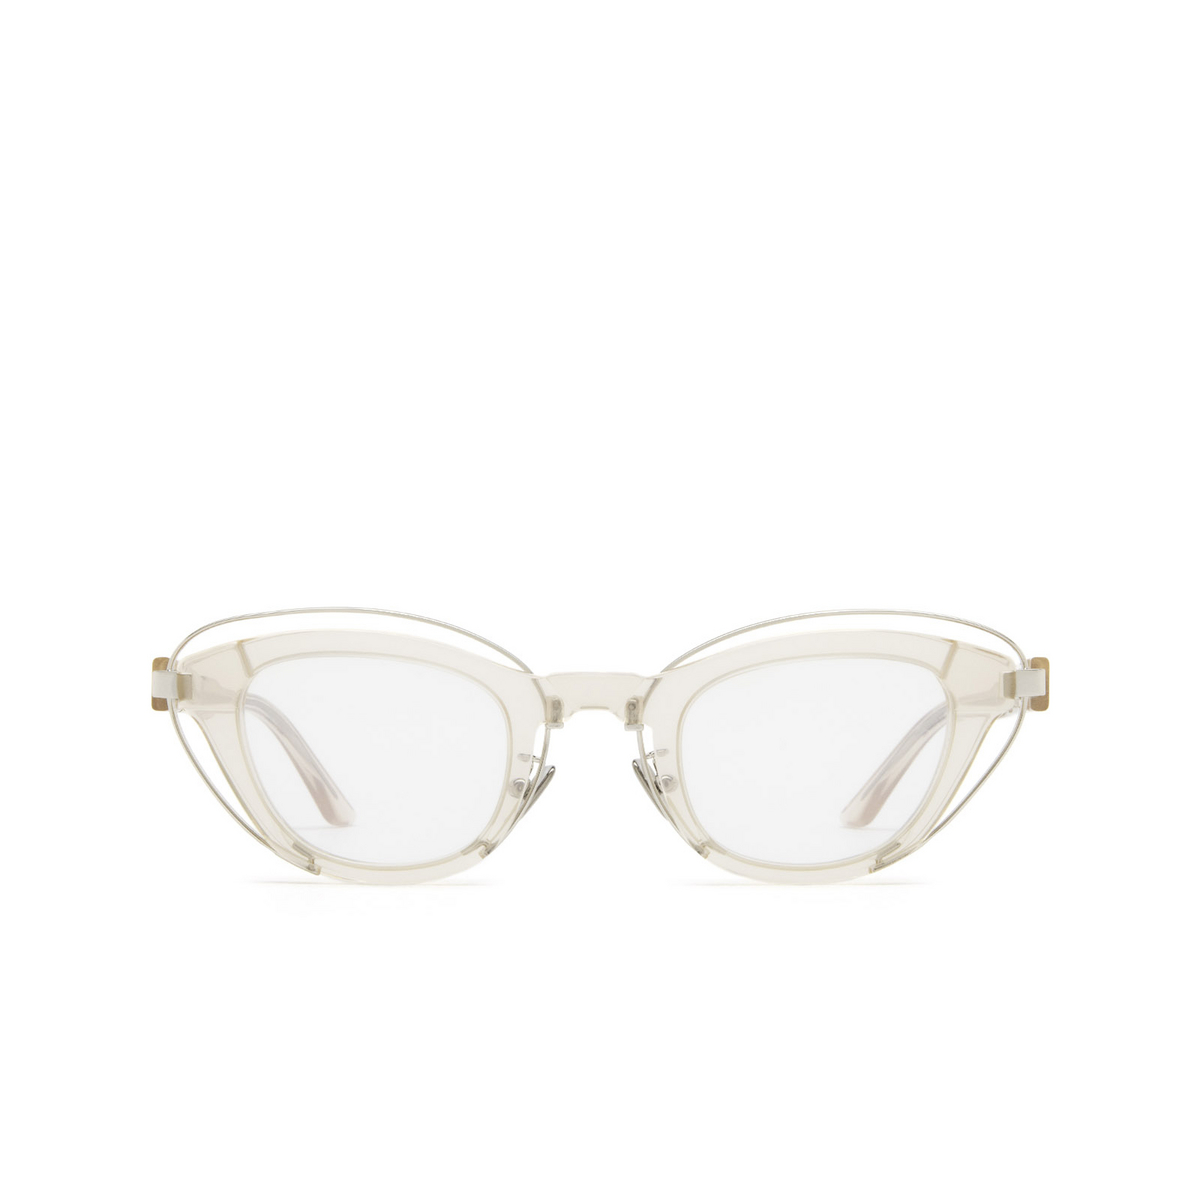 Kuboraum® Cat-eye Eyeglasses: N11 color Nude Nd - front view.